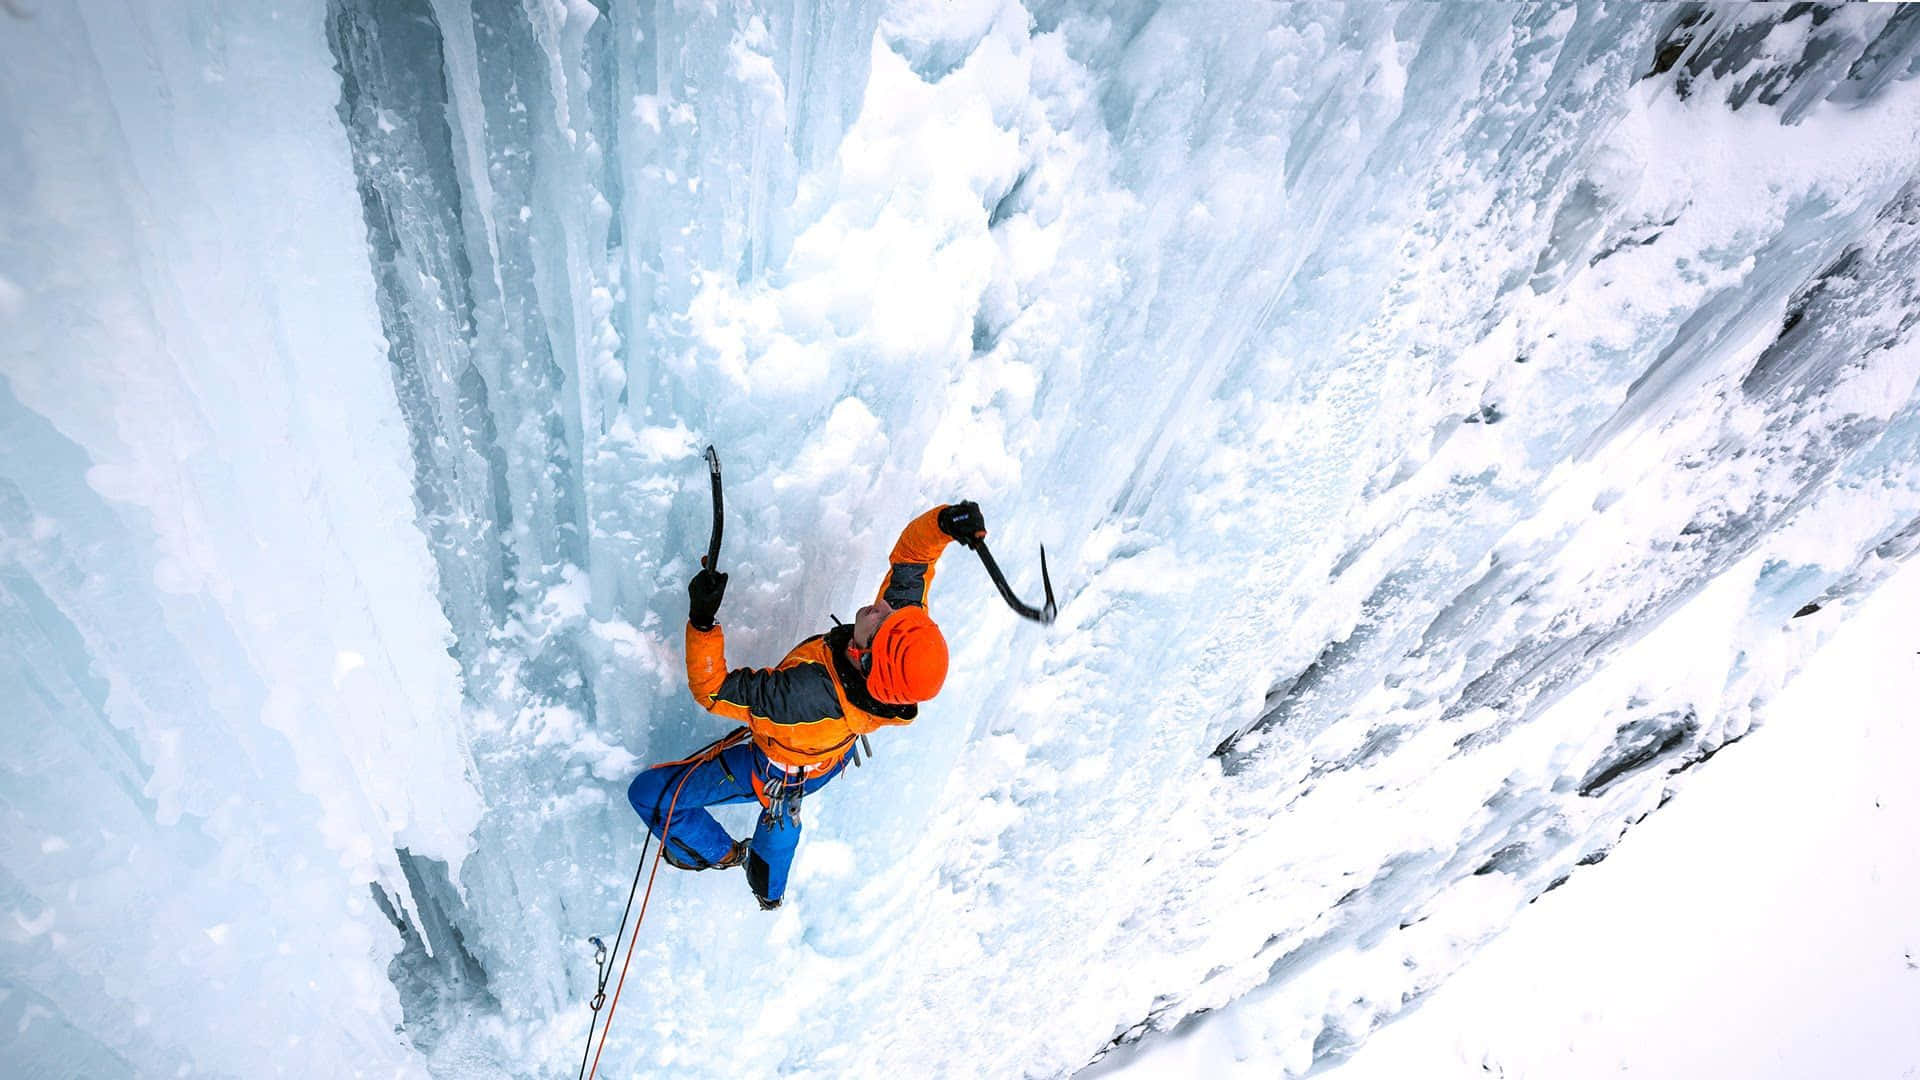 Fearless ice climber ascending a frozen waterfall Wallpaper